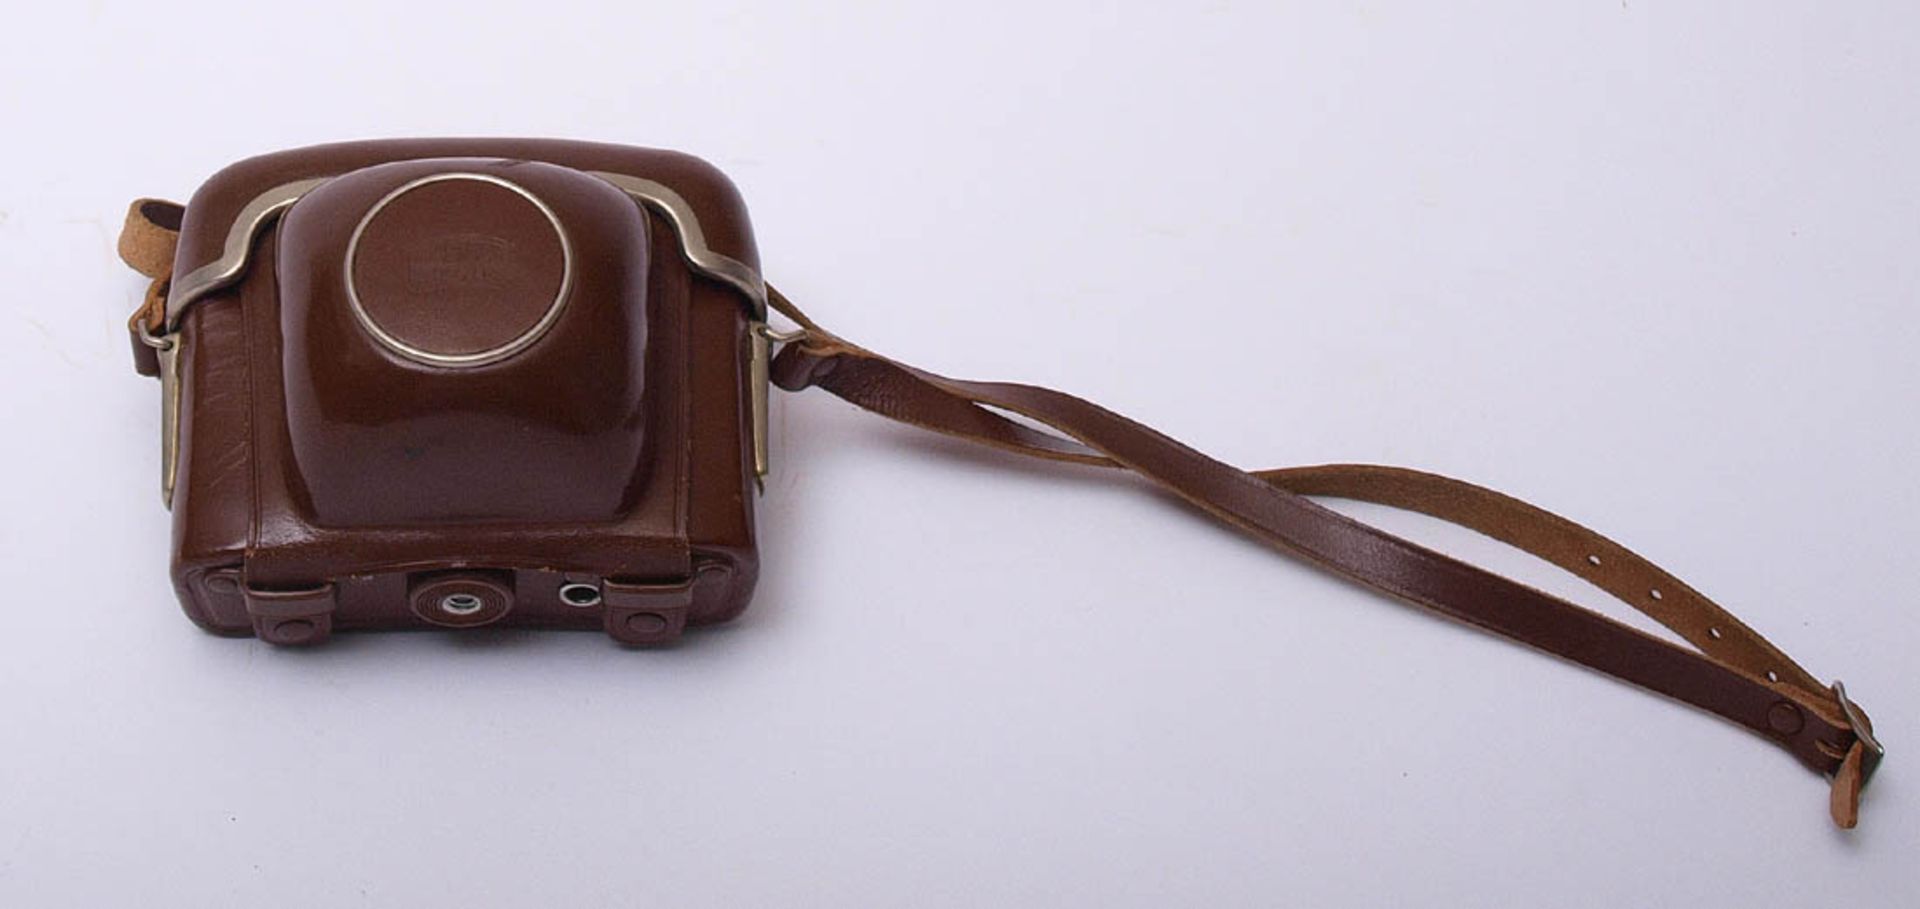 Kamera, Kodak Retinette IA Originale Lederhülle. - Bild 2 aus 2